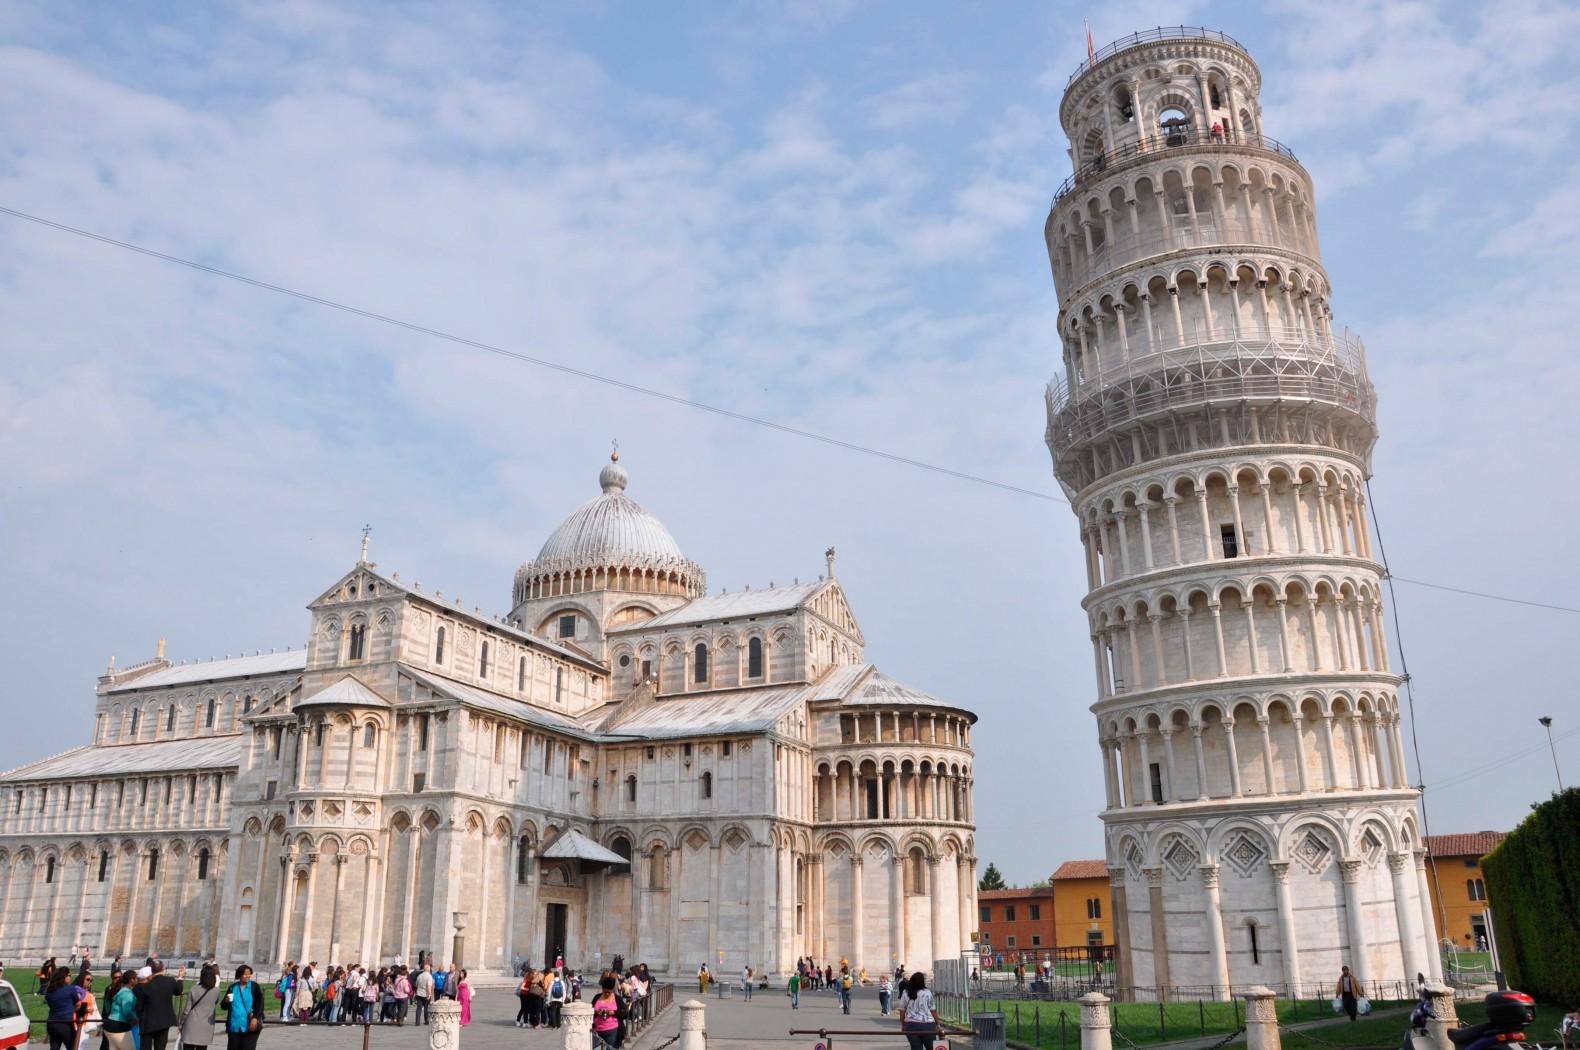 Ce trebuie să știi despre Italia înainte de a planifica o călătorie